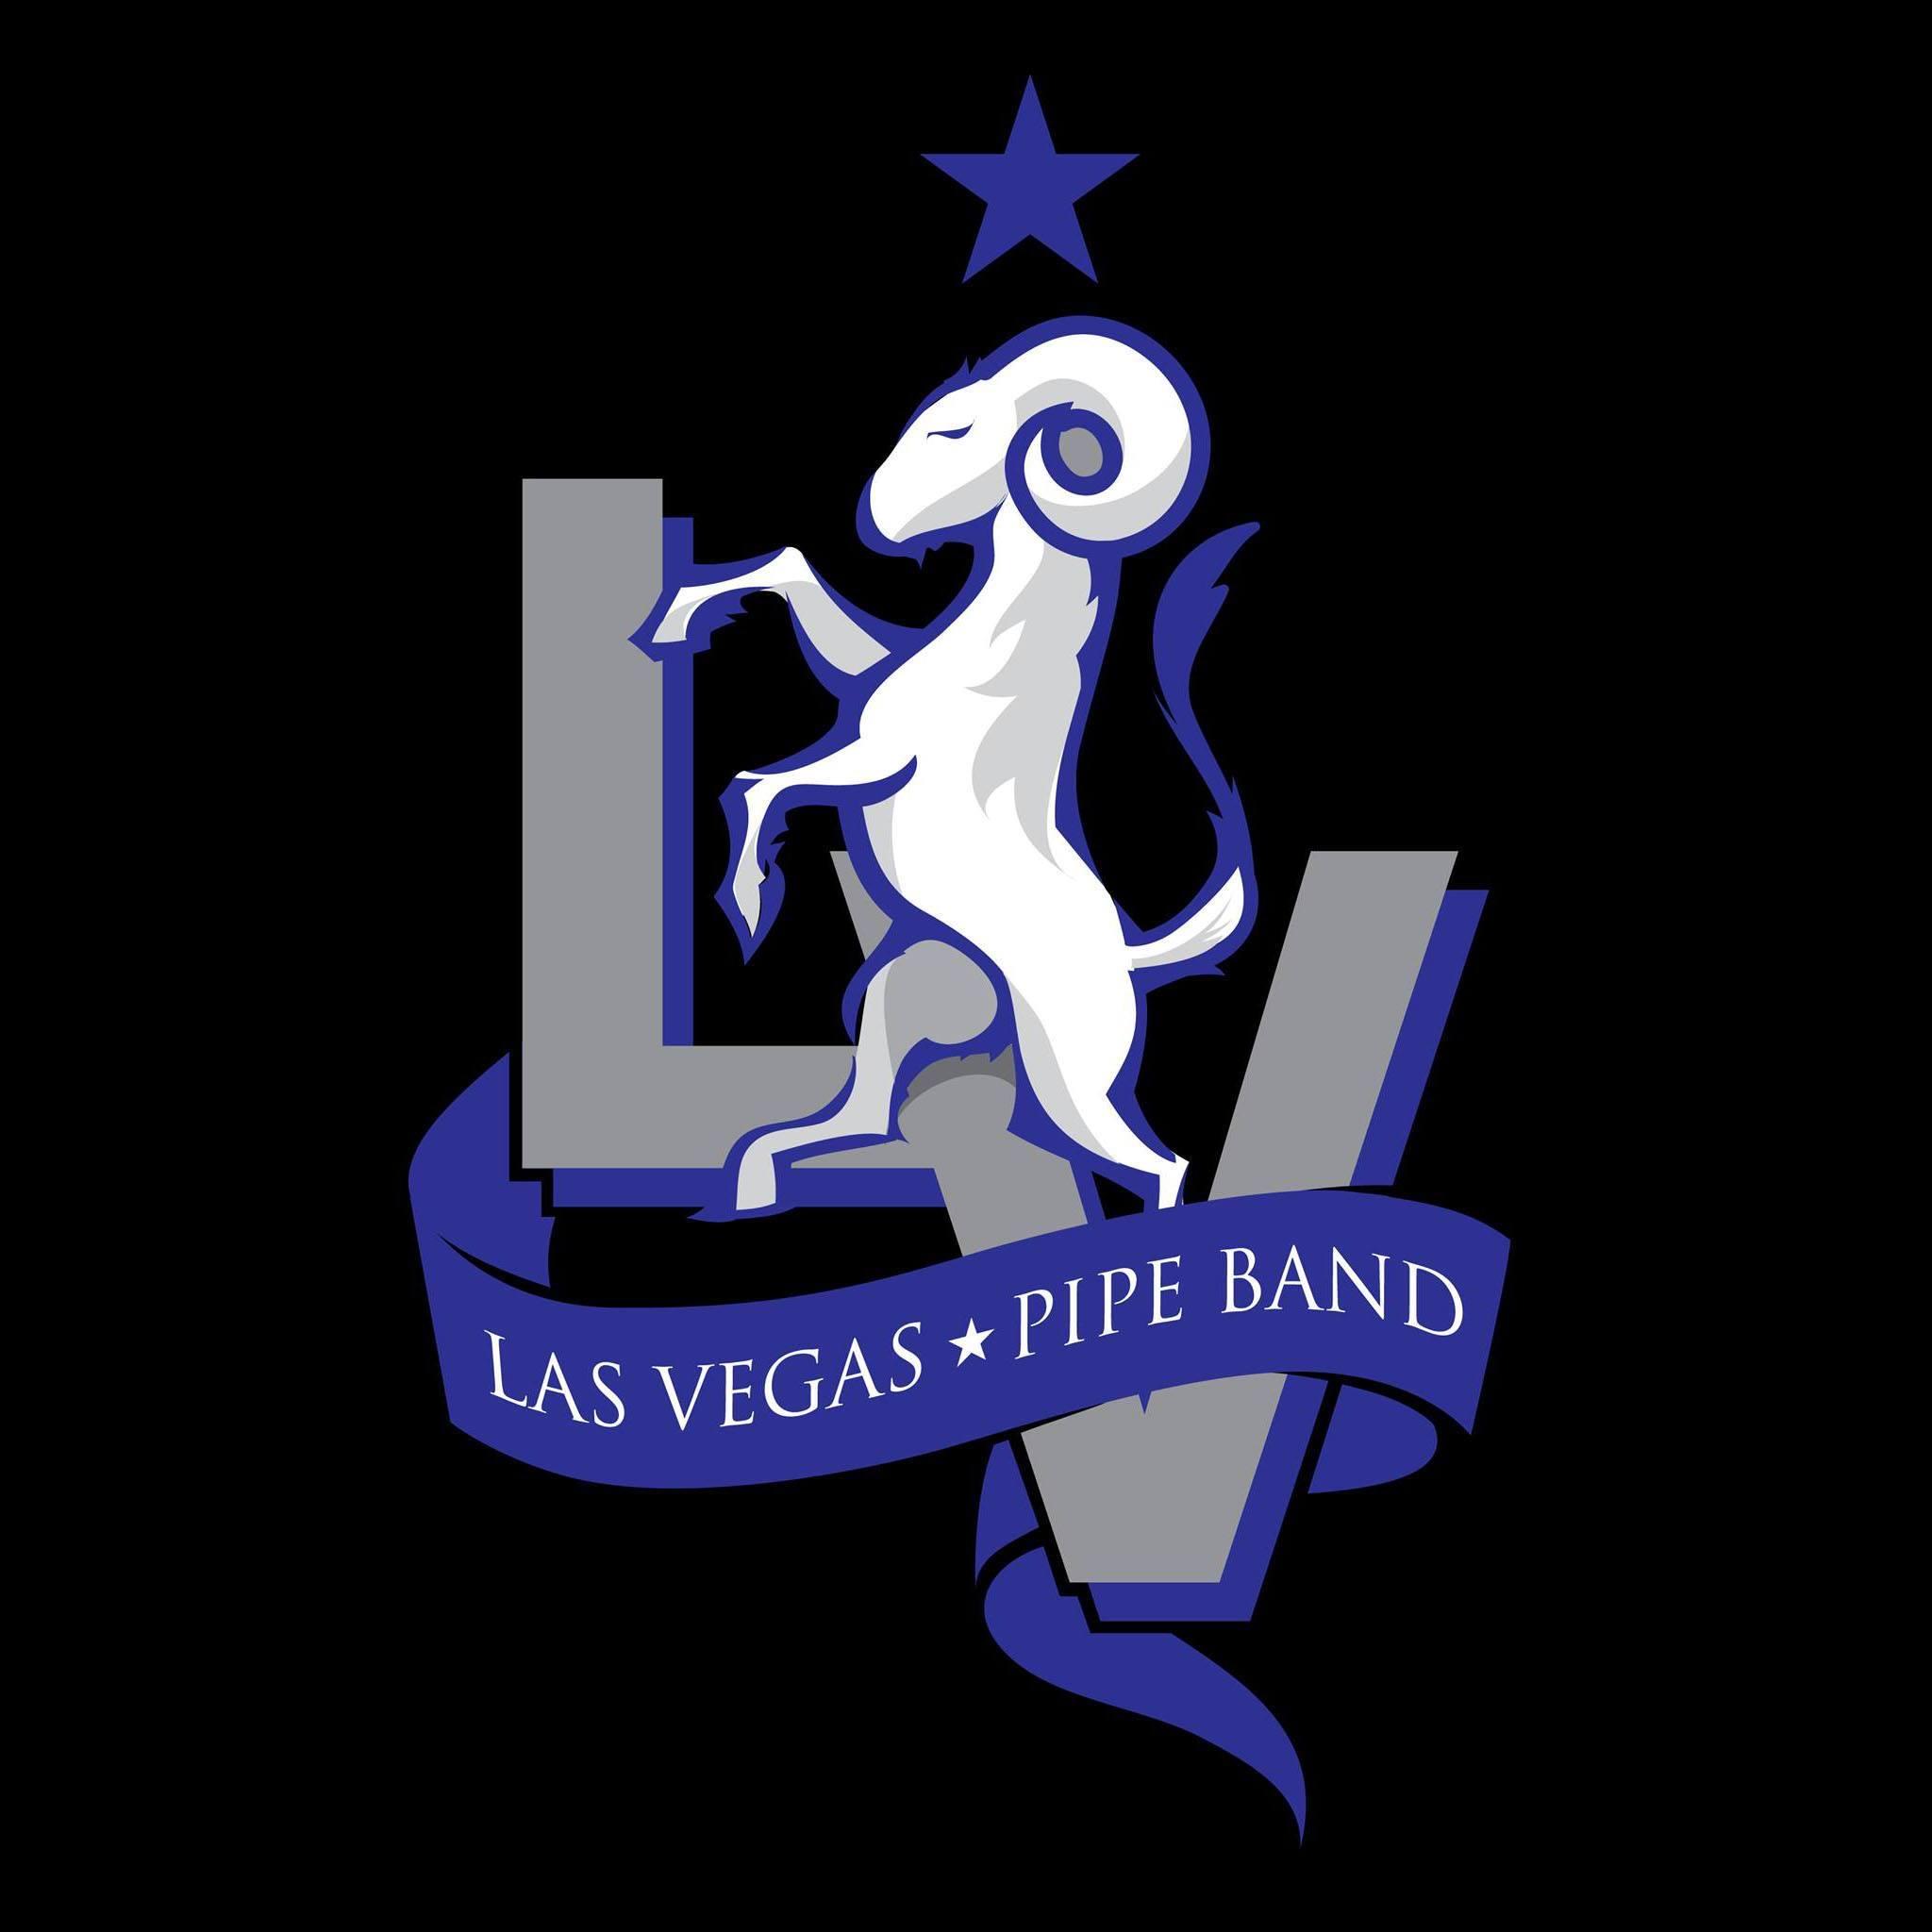 Las Vegas Pipe Band